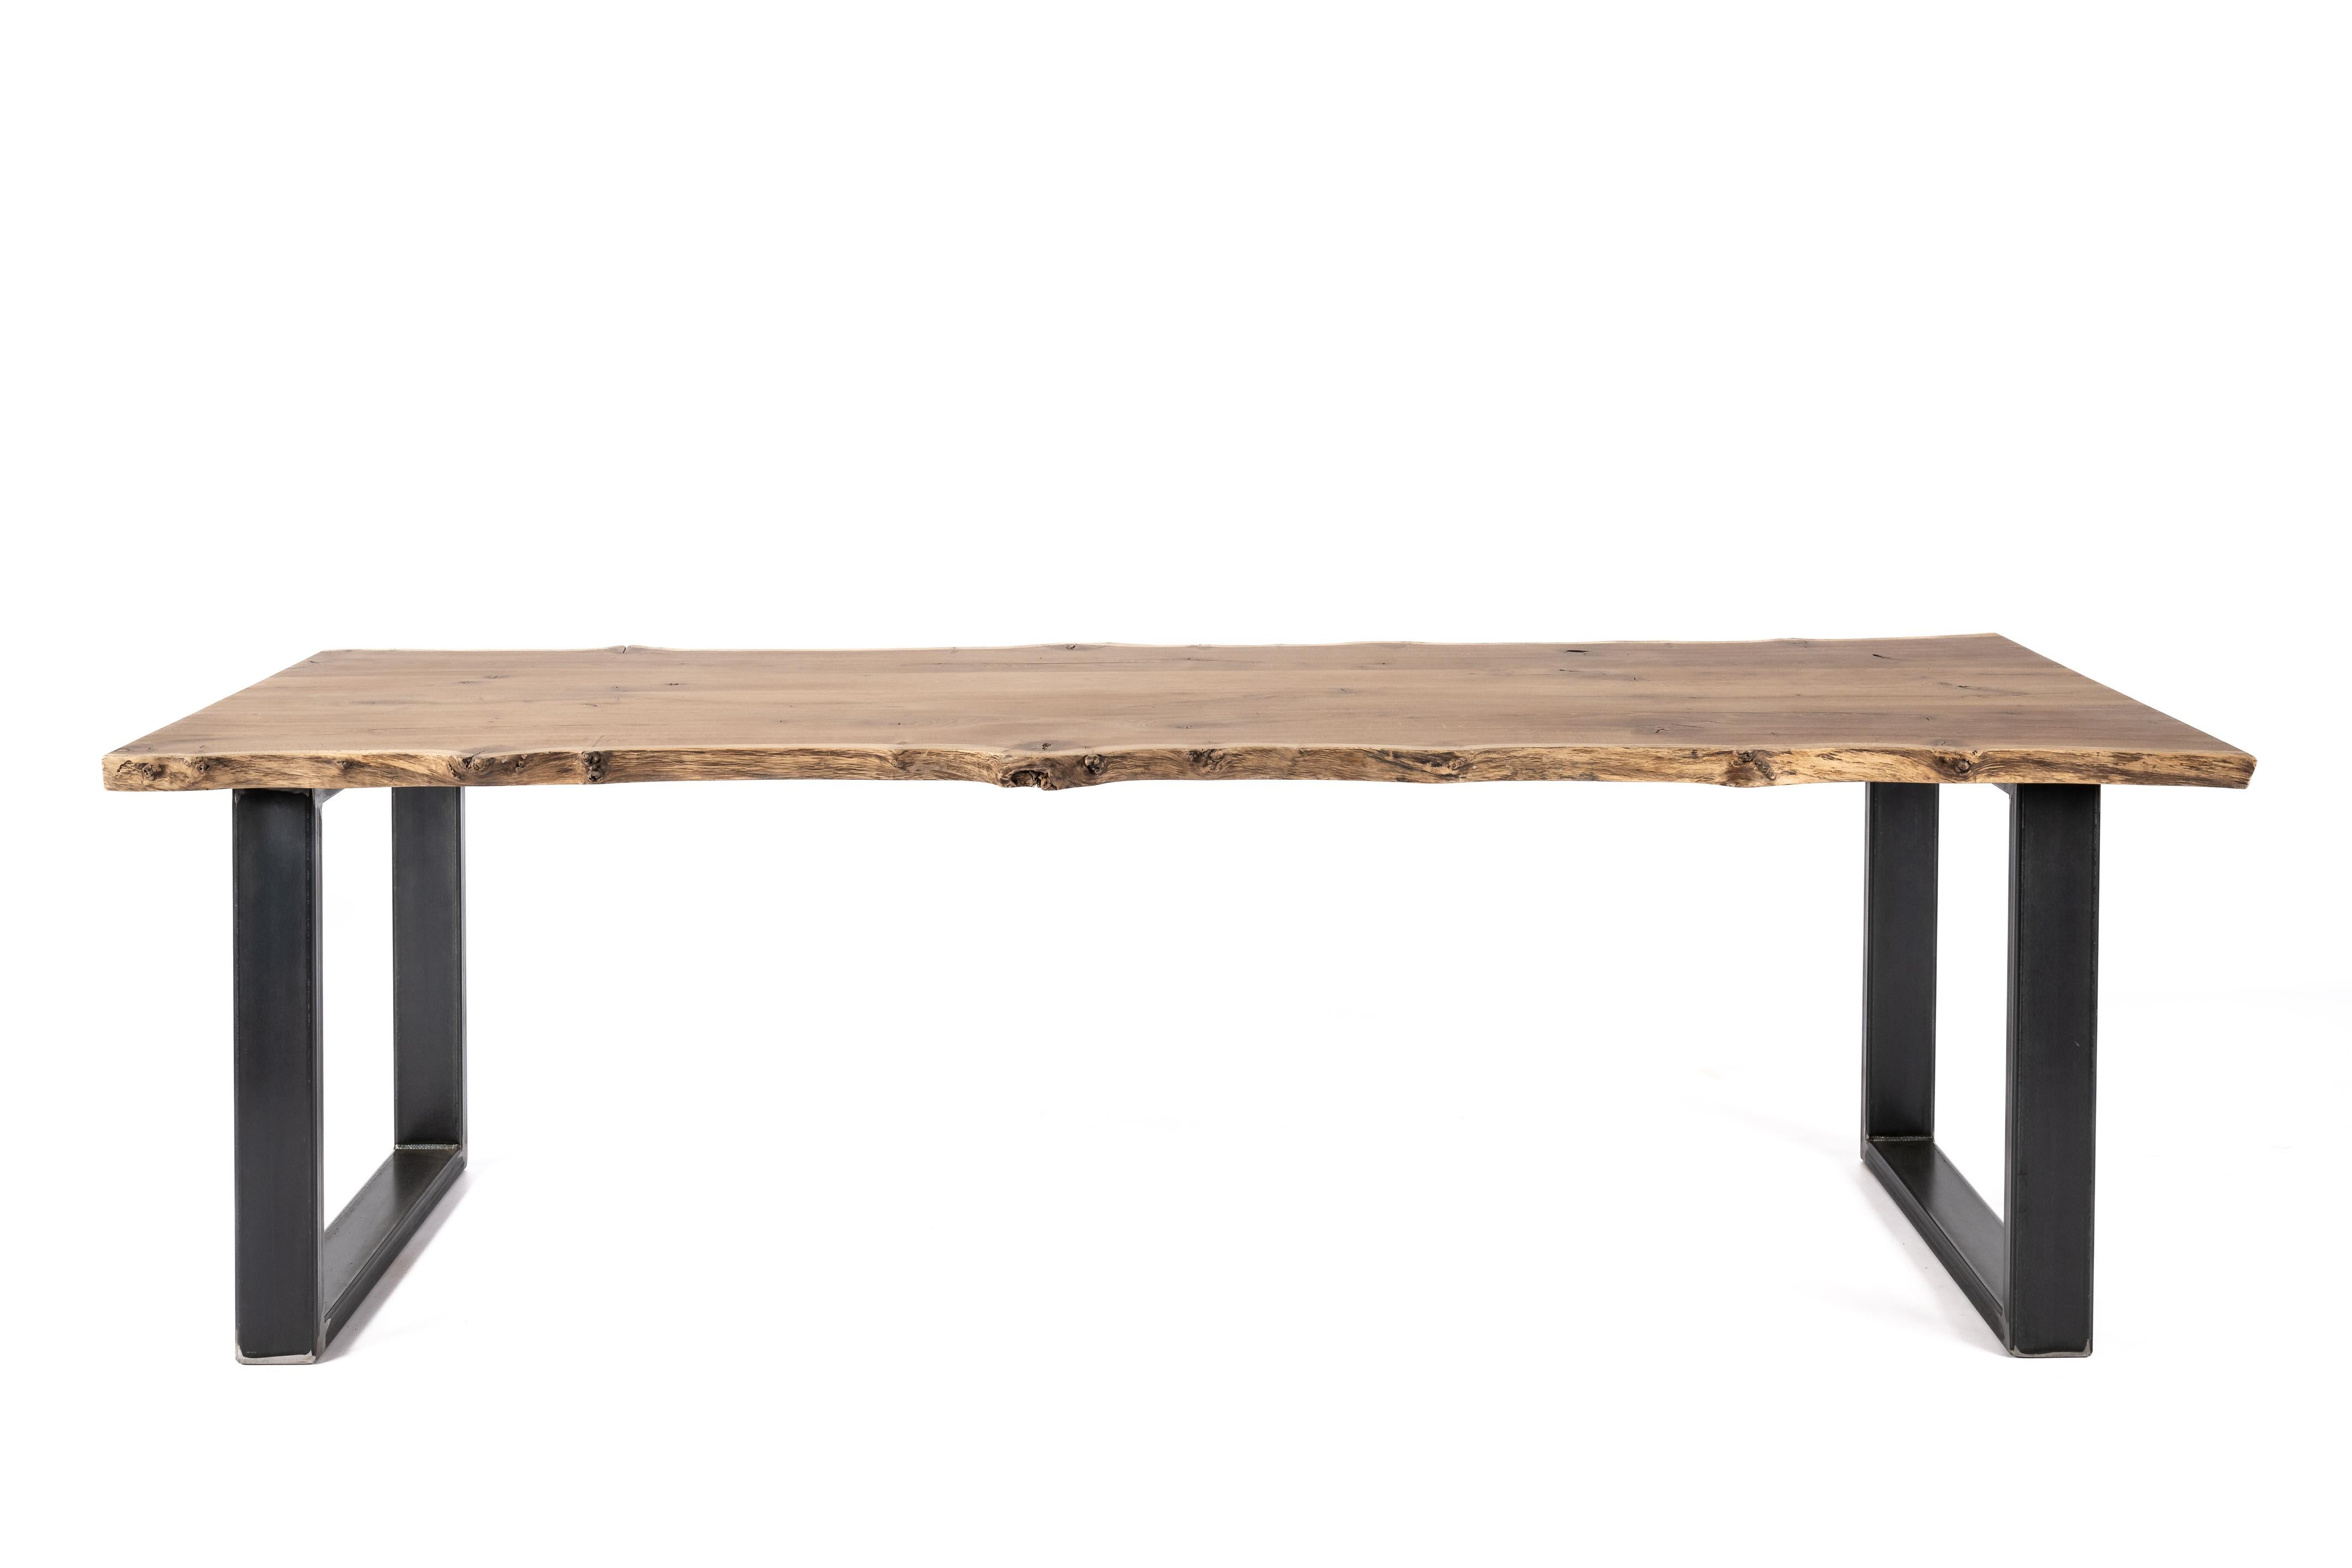 Nous vous proposons ici une table de salle à manger unique en chêne massif vieilli à bords vifs avec une finition naturelle mate. Fabriquée à la main à partir de chêne vieilli de première qualité provenant des forêts luxuriantes du nord-est de la